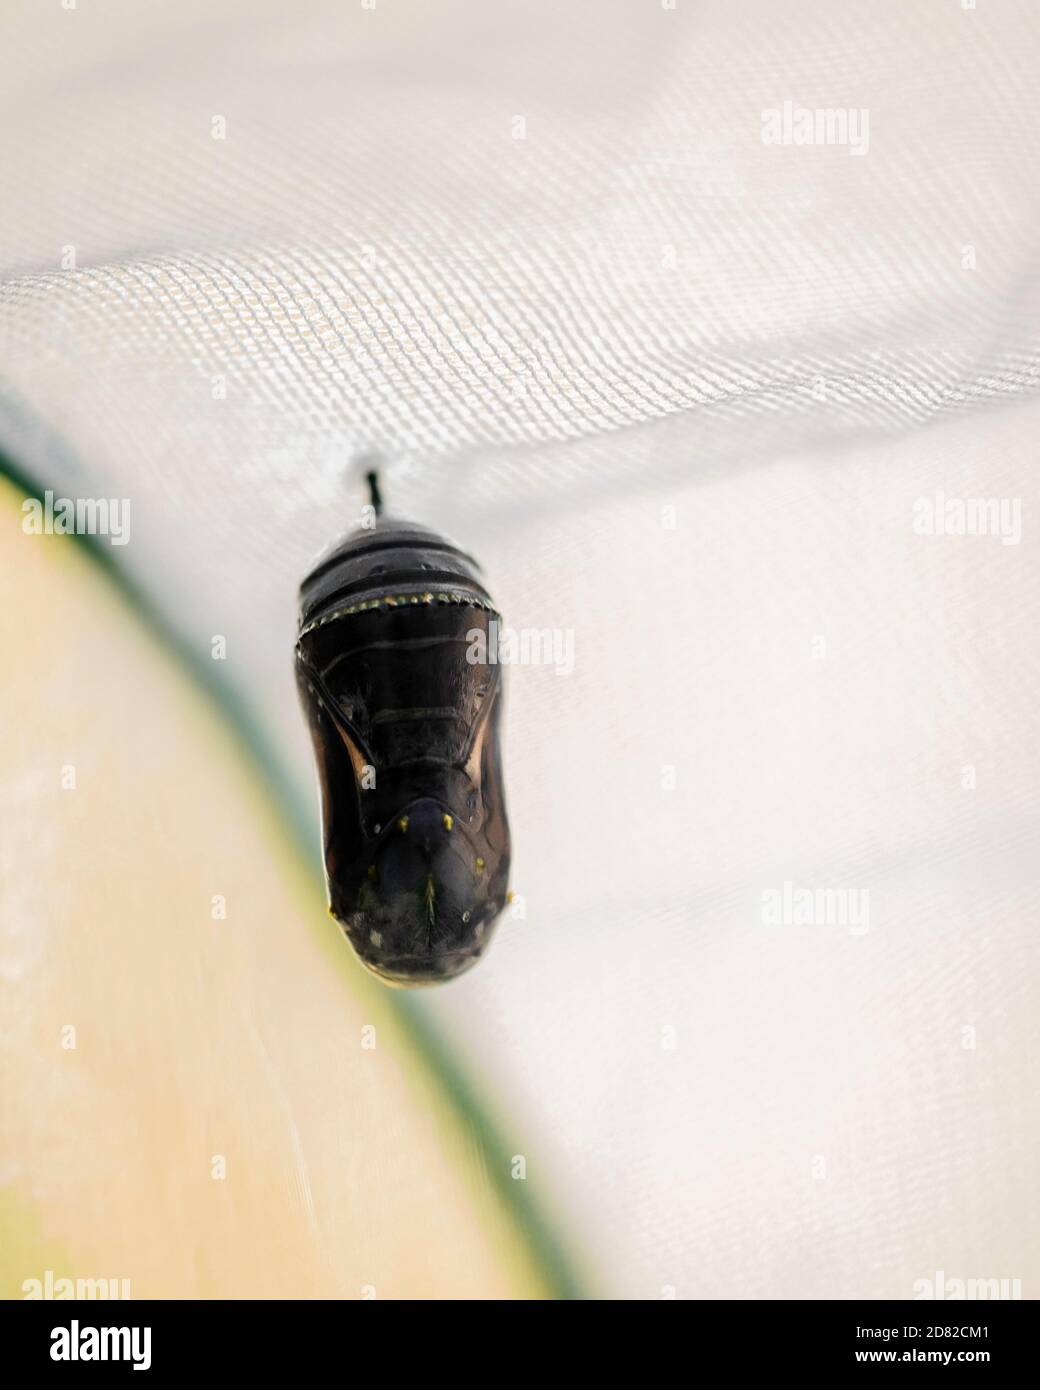 La crysalis d'un papillon monarque, dernière étape après le passage du vert au noir. Il sera bientôt enjoint, ou émerger comme un papillon. Kansas, États-Unis Banque D'Images